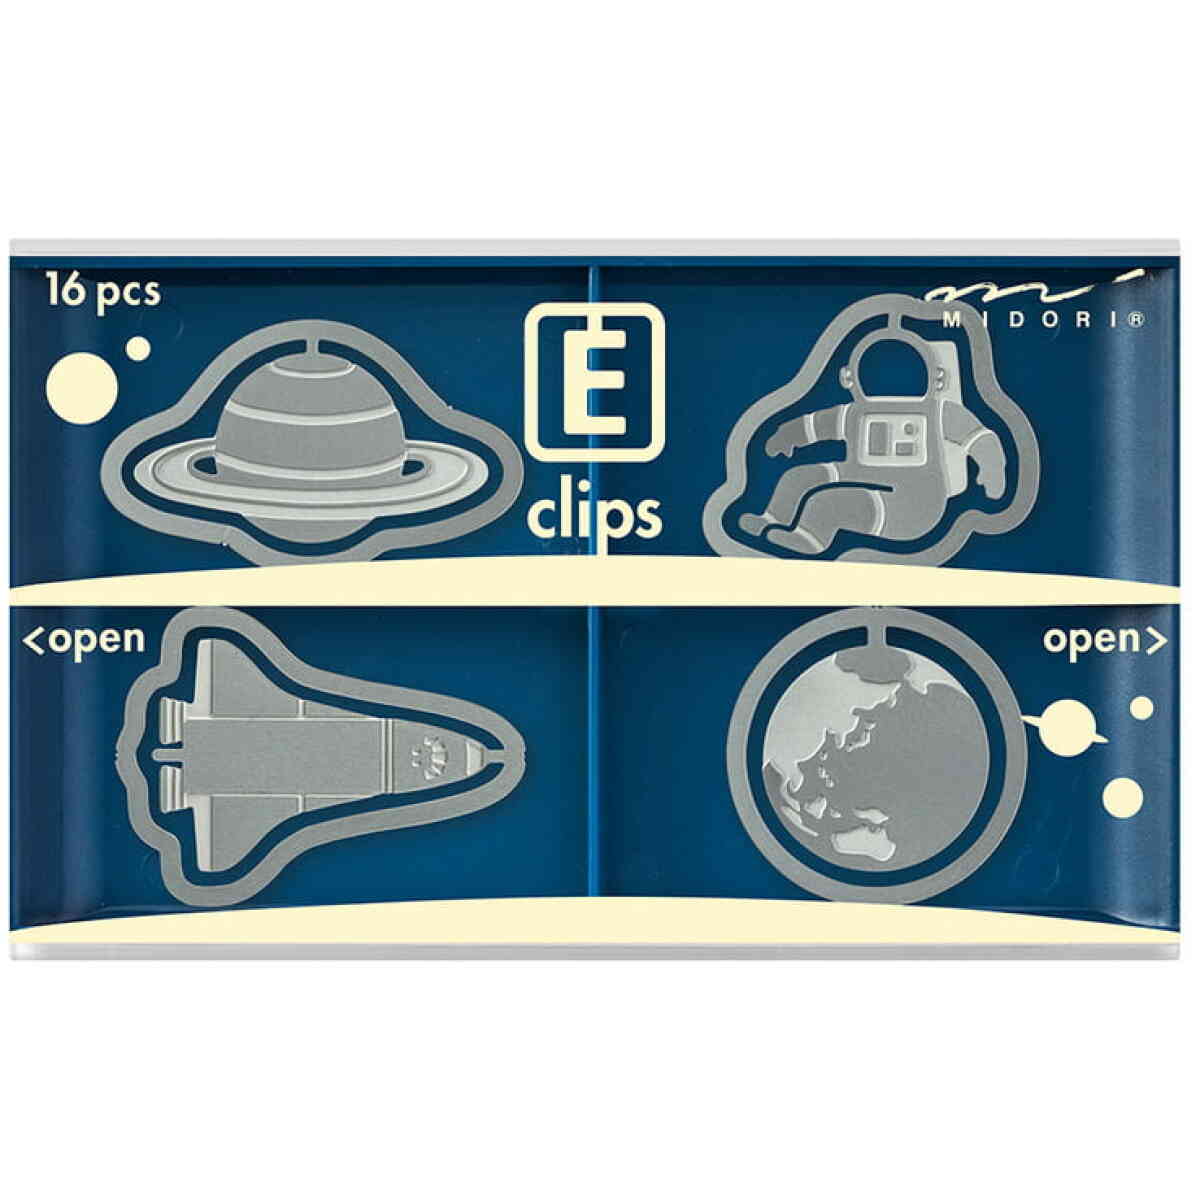 E ClipsSpace